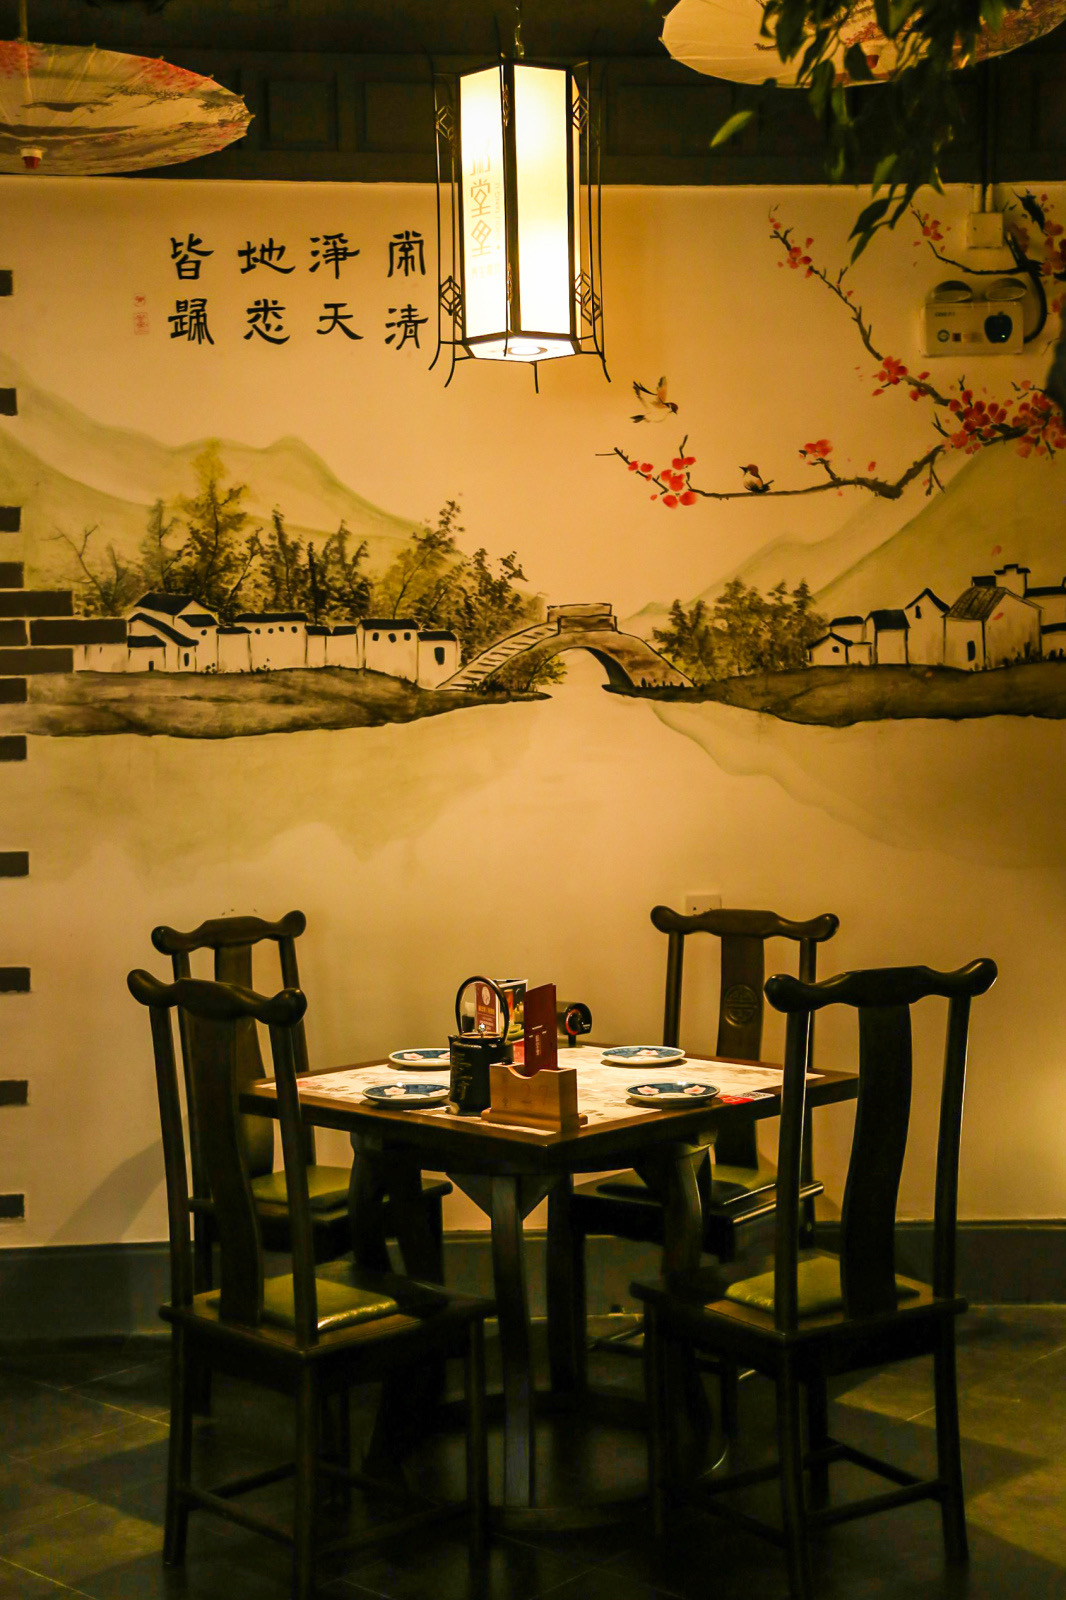 贵阳墙画公司-贵阳壁画公司-餐厅主题墙绘-背景墙手绘